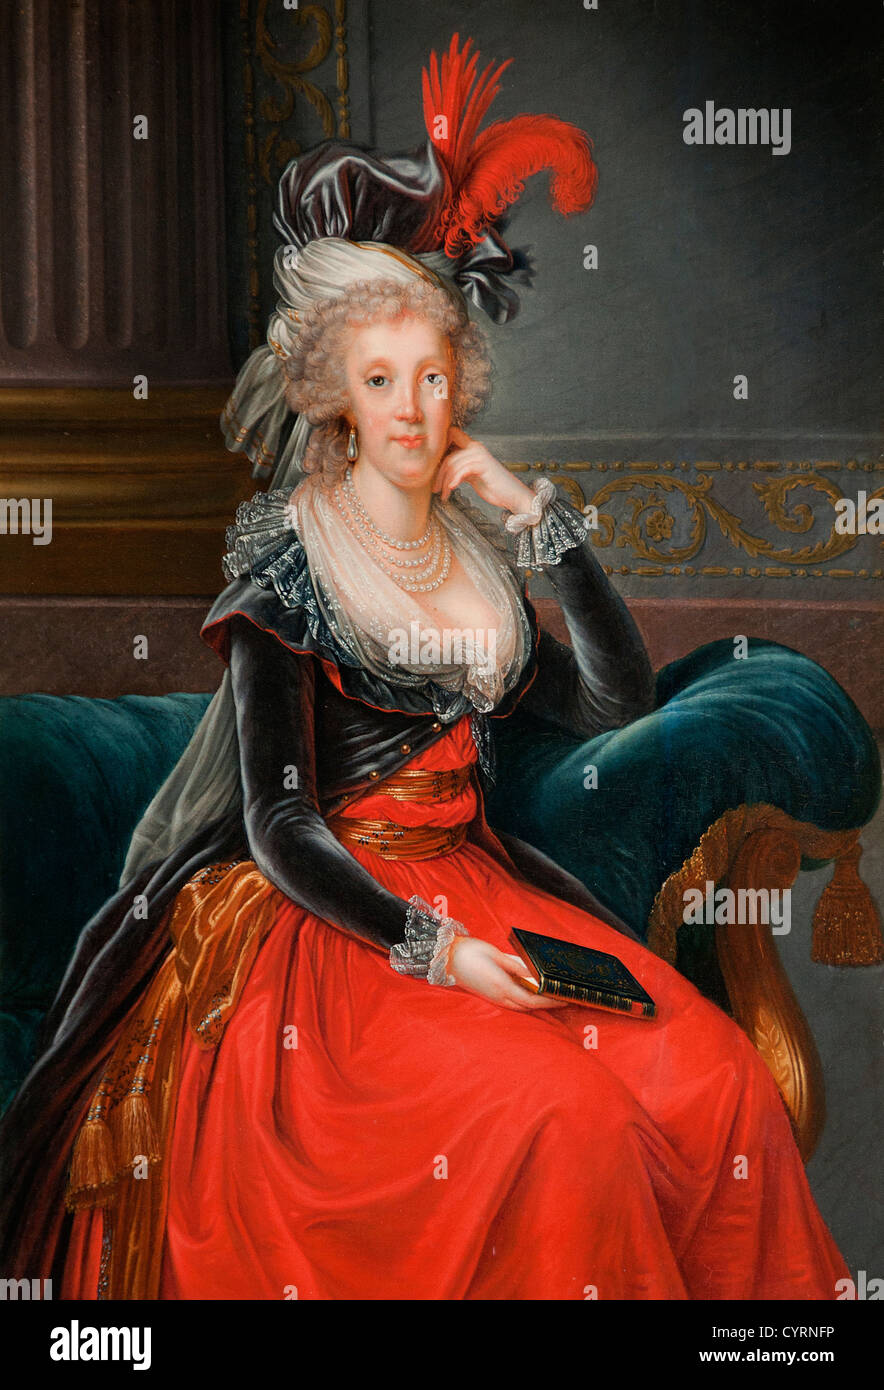 Marie Caroline de Habsbourg Lorraine1752-1814 Archiduchesse Autriche reine de Naples par Louise Elisabeth Vigee Lebrun Banque D'Images